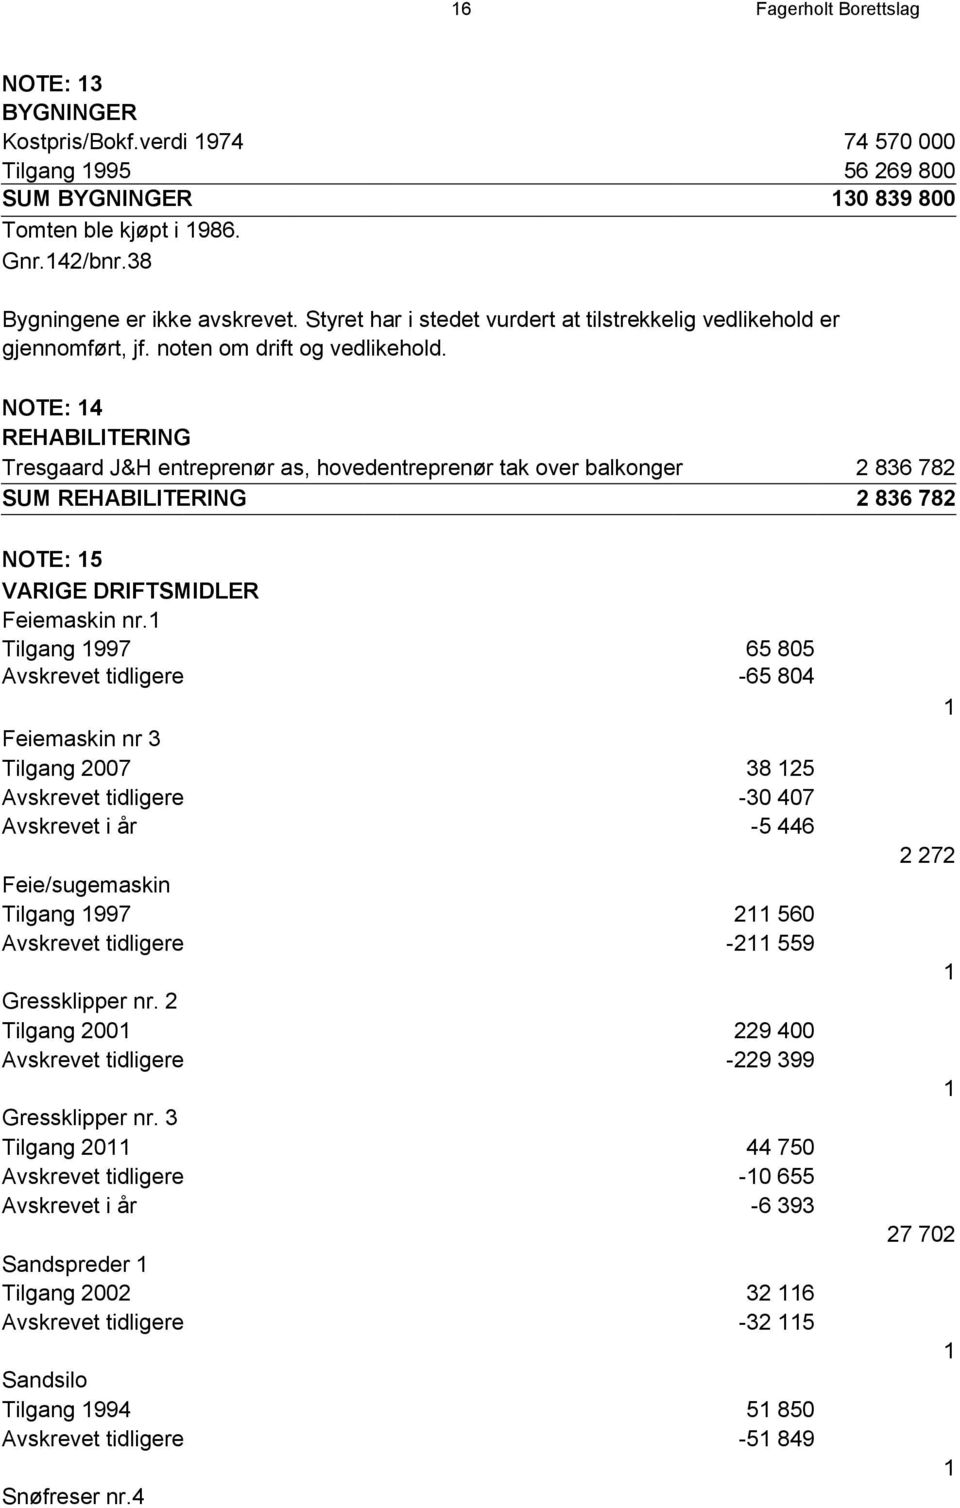 NOTE: 14 REHABILITERING Tresgaard J&H entreprenør as, hovedentreprenør tak over balkonger 2 836 782 SUM REHABILITERING 2 836 782 NOTE: 15 VARIGE DRIFTSMIDLER Feiemaskin nr.